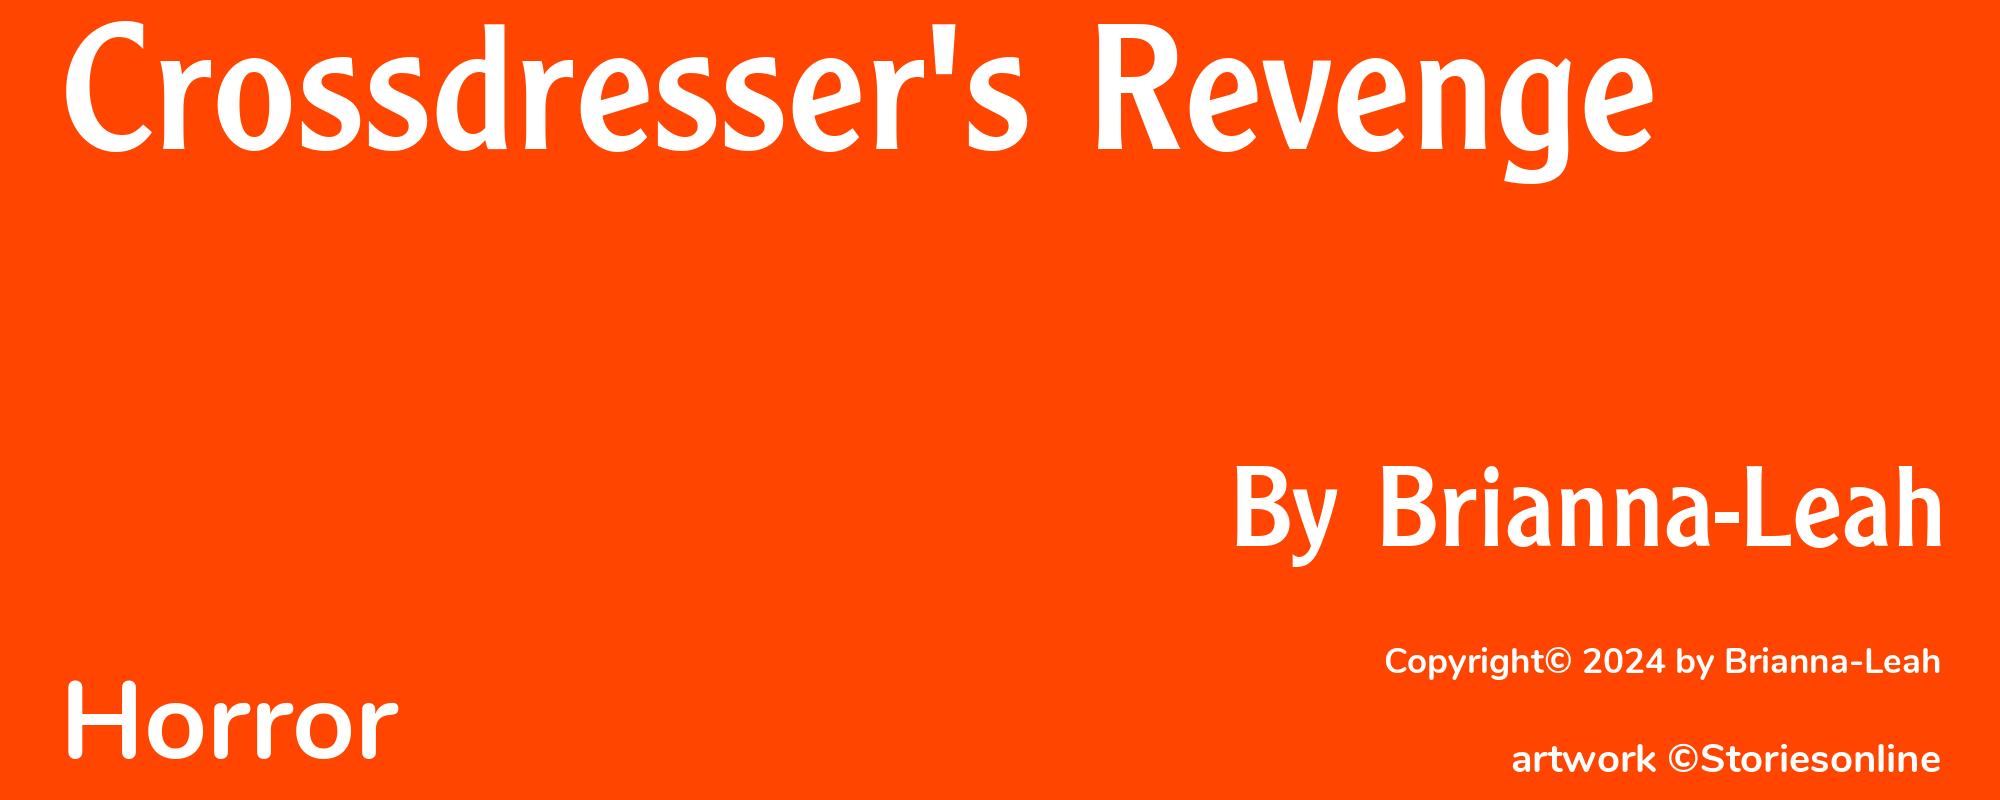 Crossdresser's Revenge - Cover